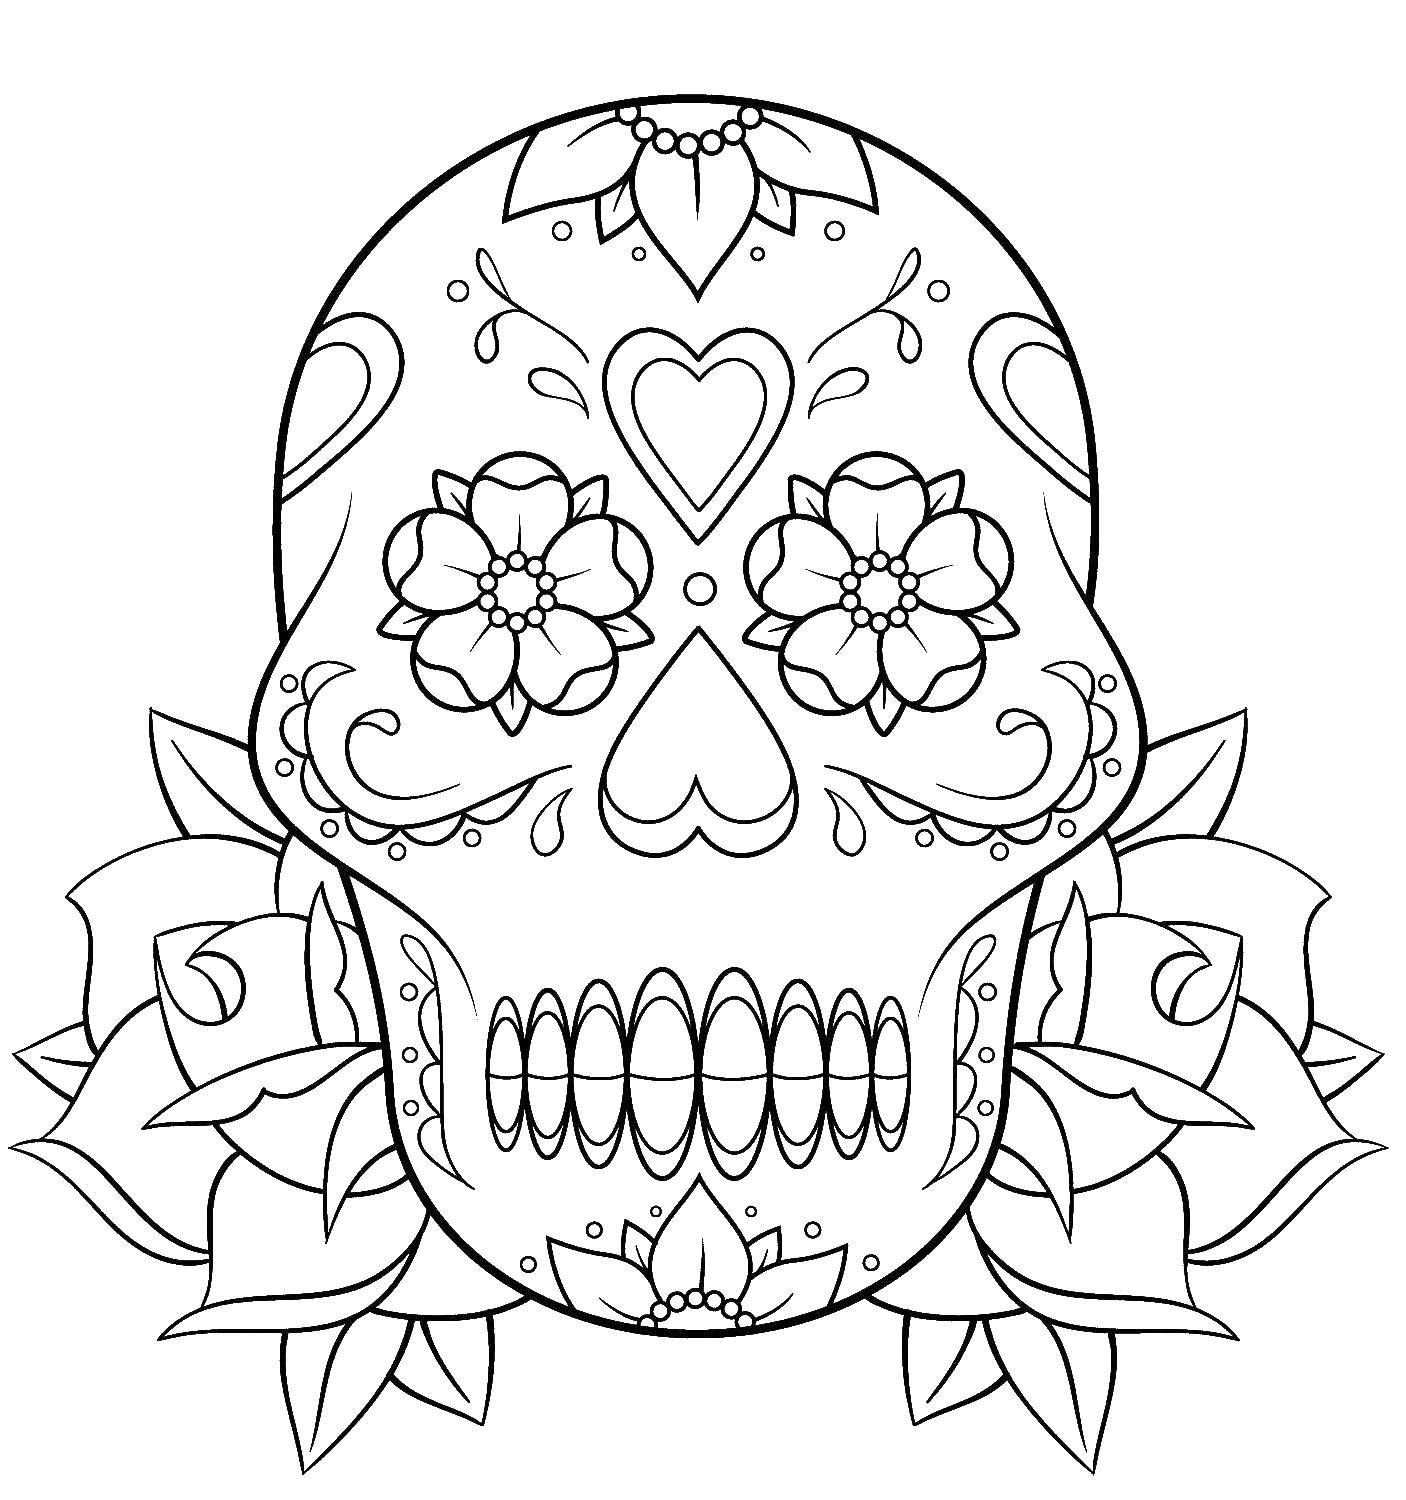 Coloring Skull. Category Skull. Tags:  skull, patterns, flowers.